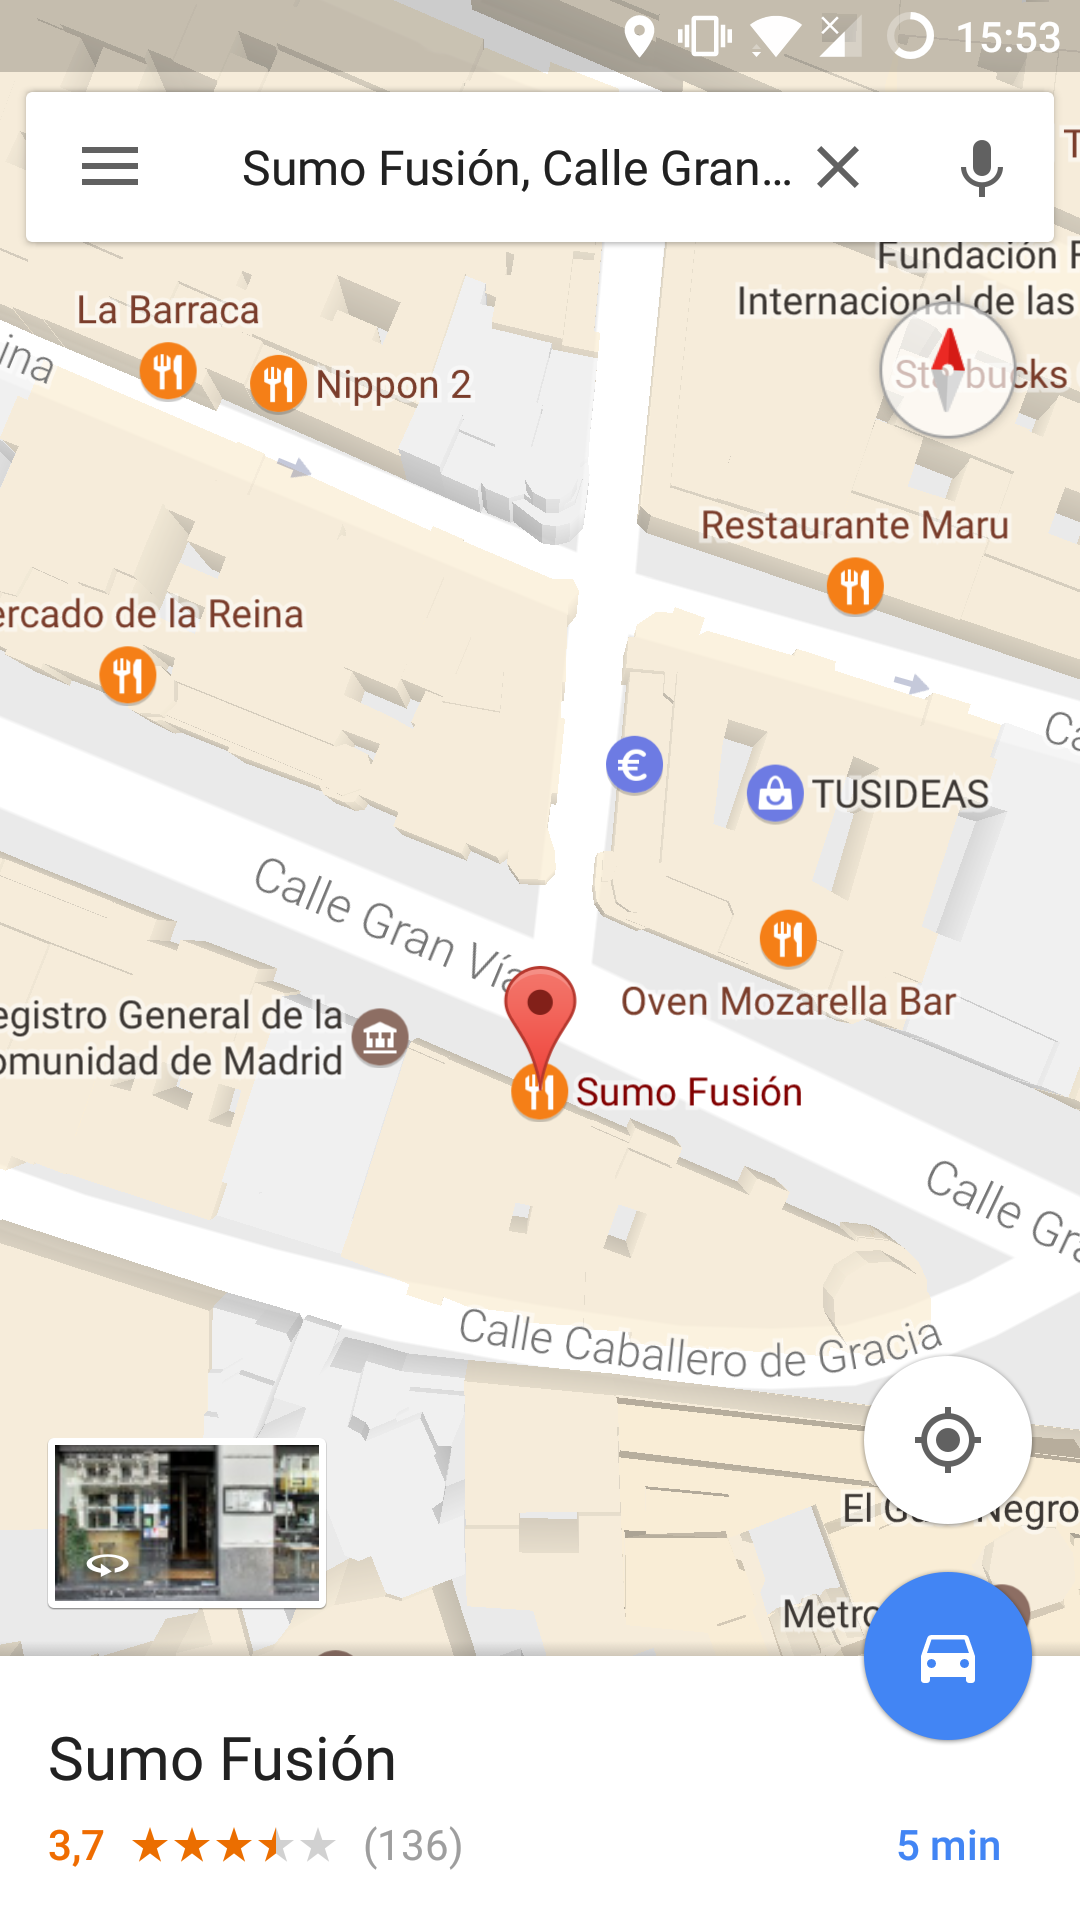 Lugar encontrado a través de la aplicación de Google Maps